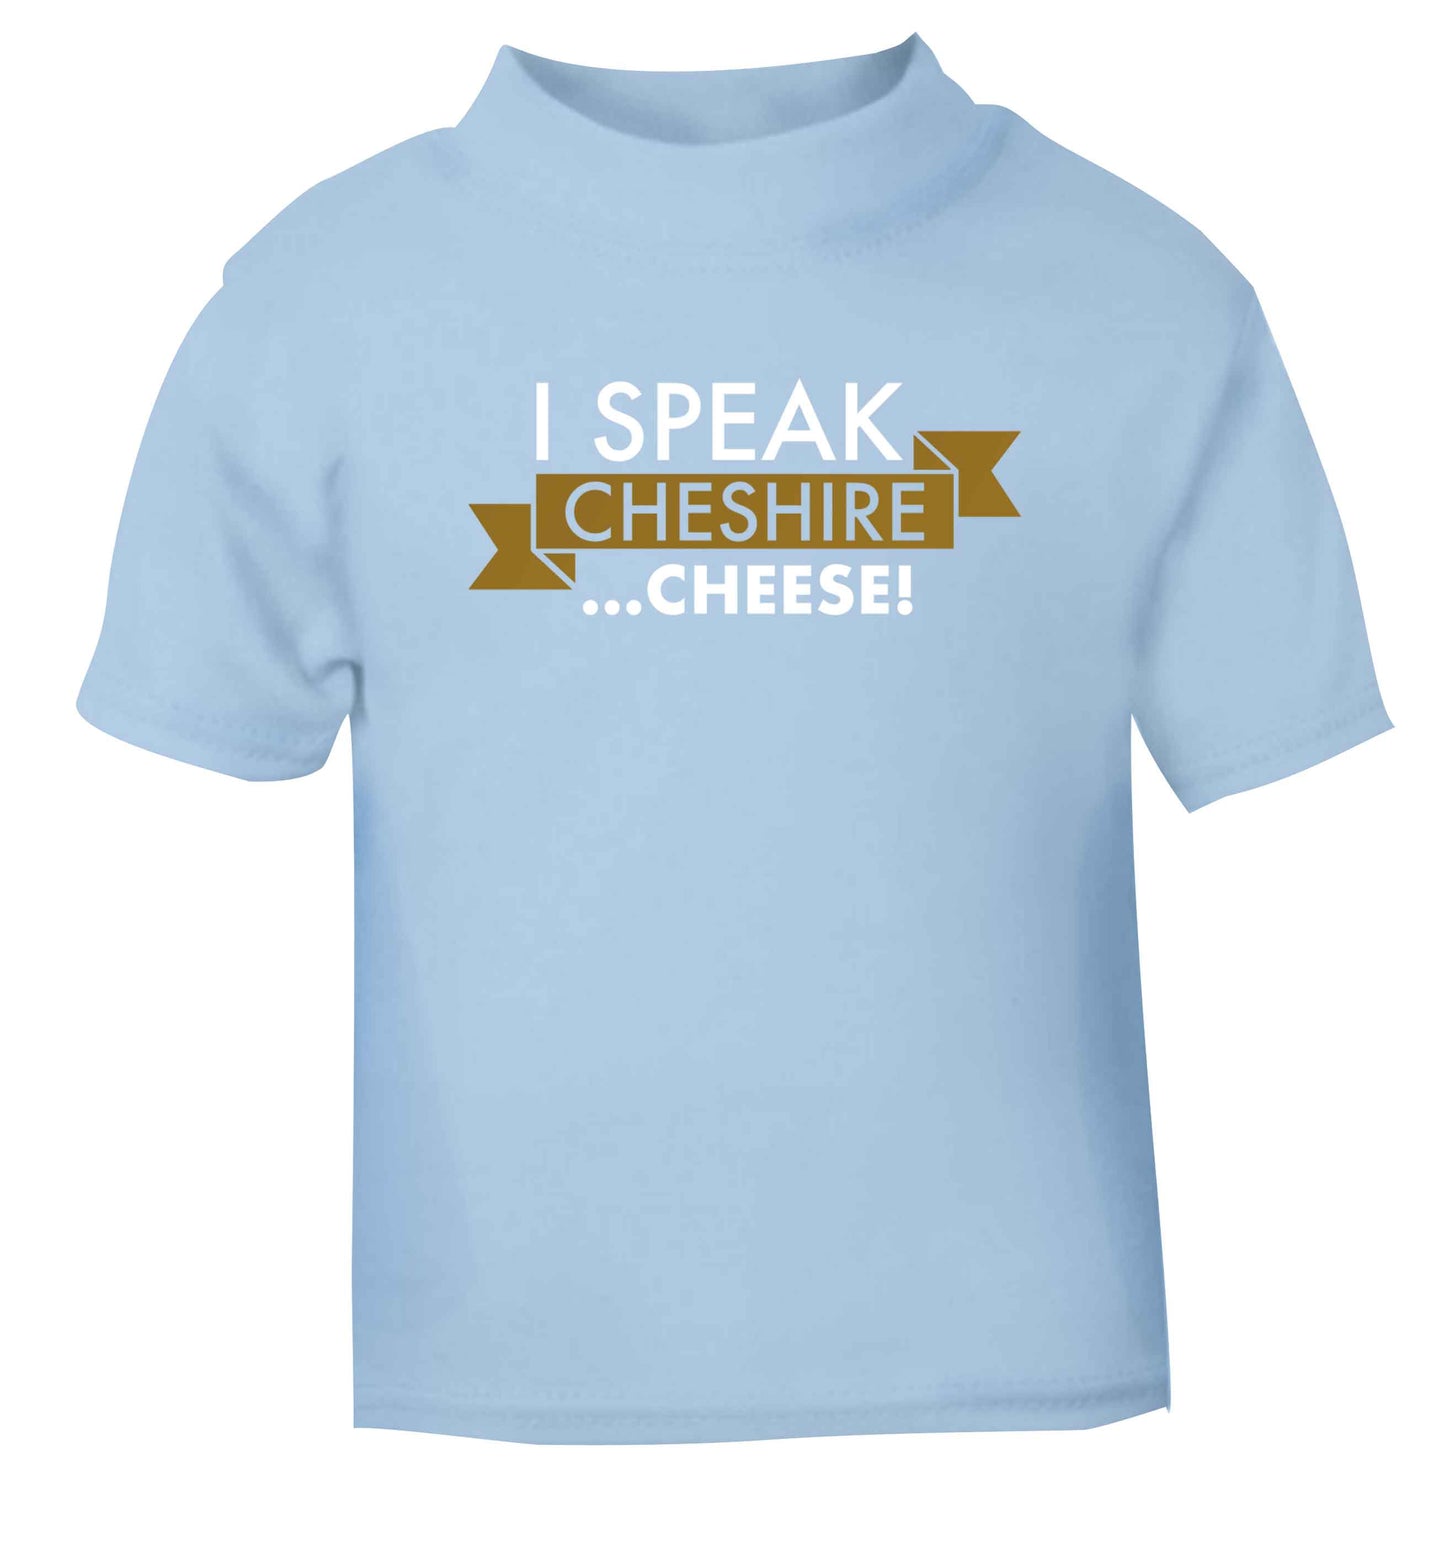 I speak Cheshire cheese light blue Baby Toddler Tshirt 2 Years